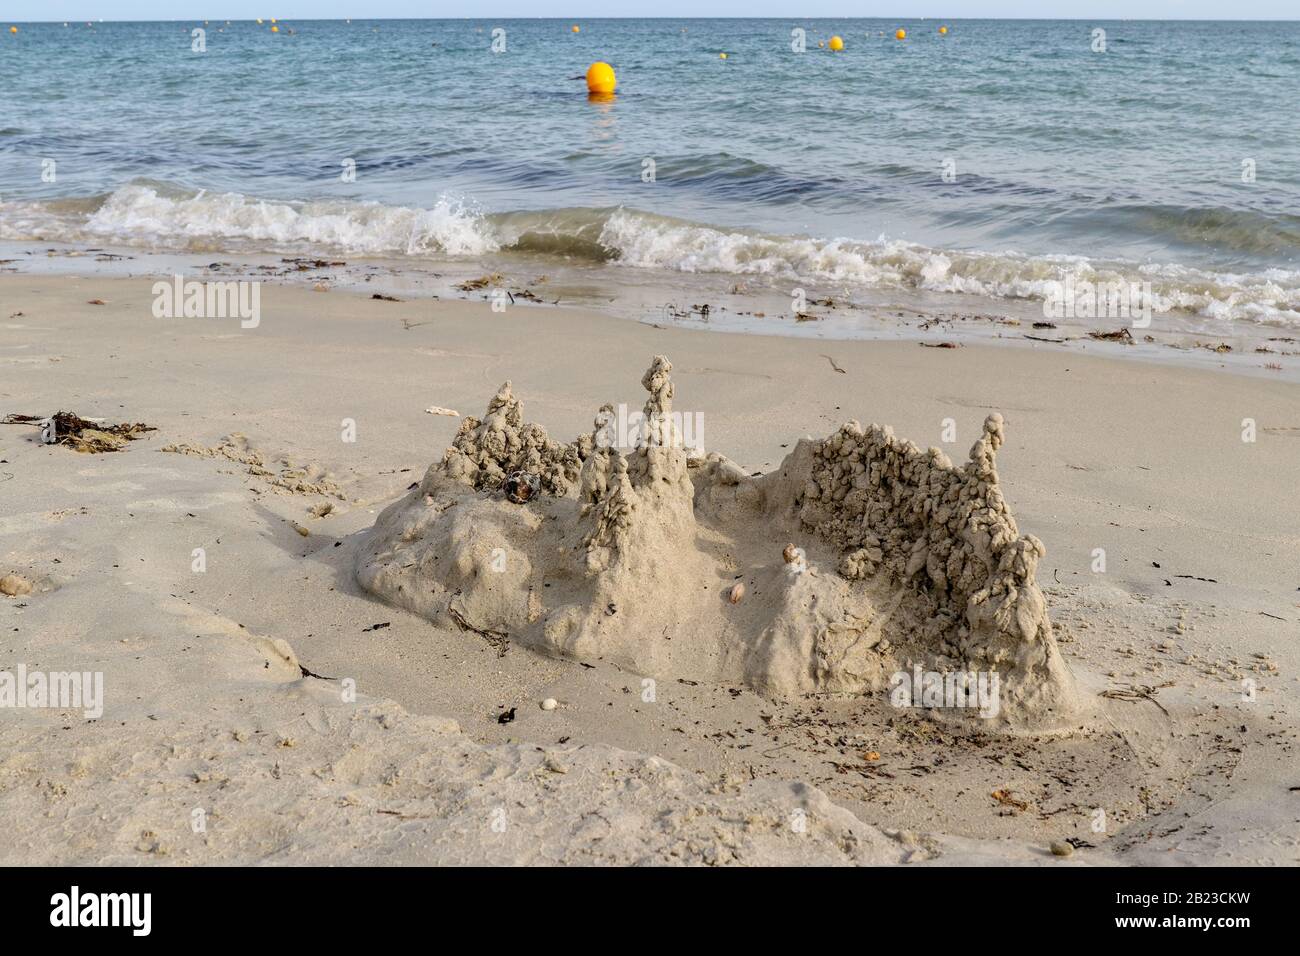 Château de sable sur la plage, les hommes du beach à Carnac, Bretagne, France Banque D'Images